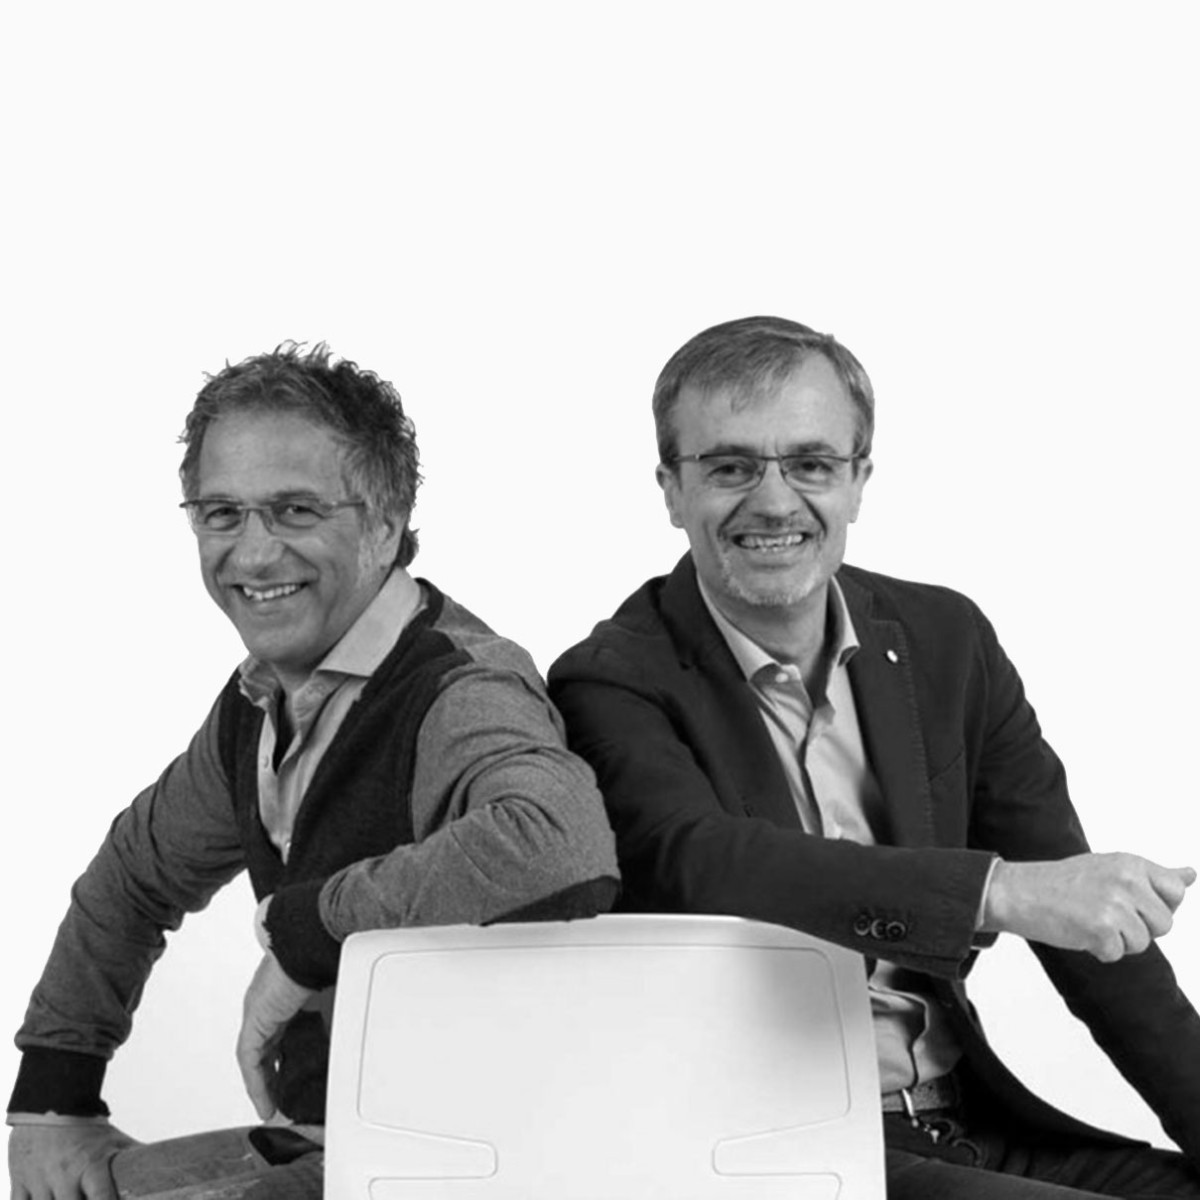 Baldanzi & Novelli - дизайнеры офисной мебели 